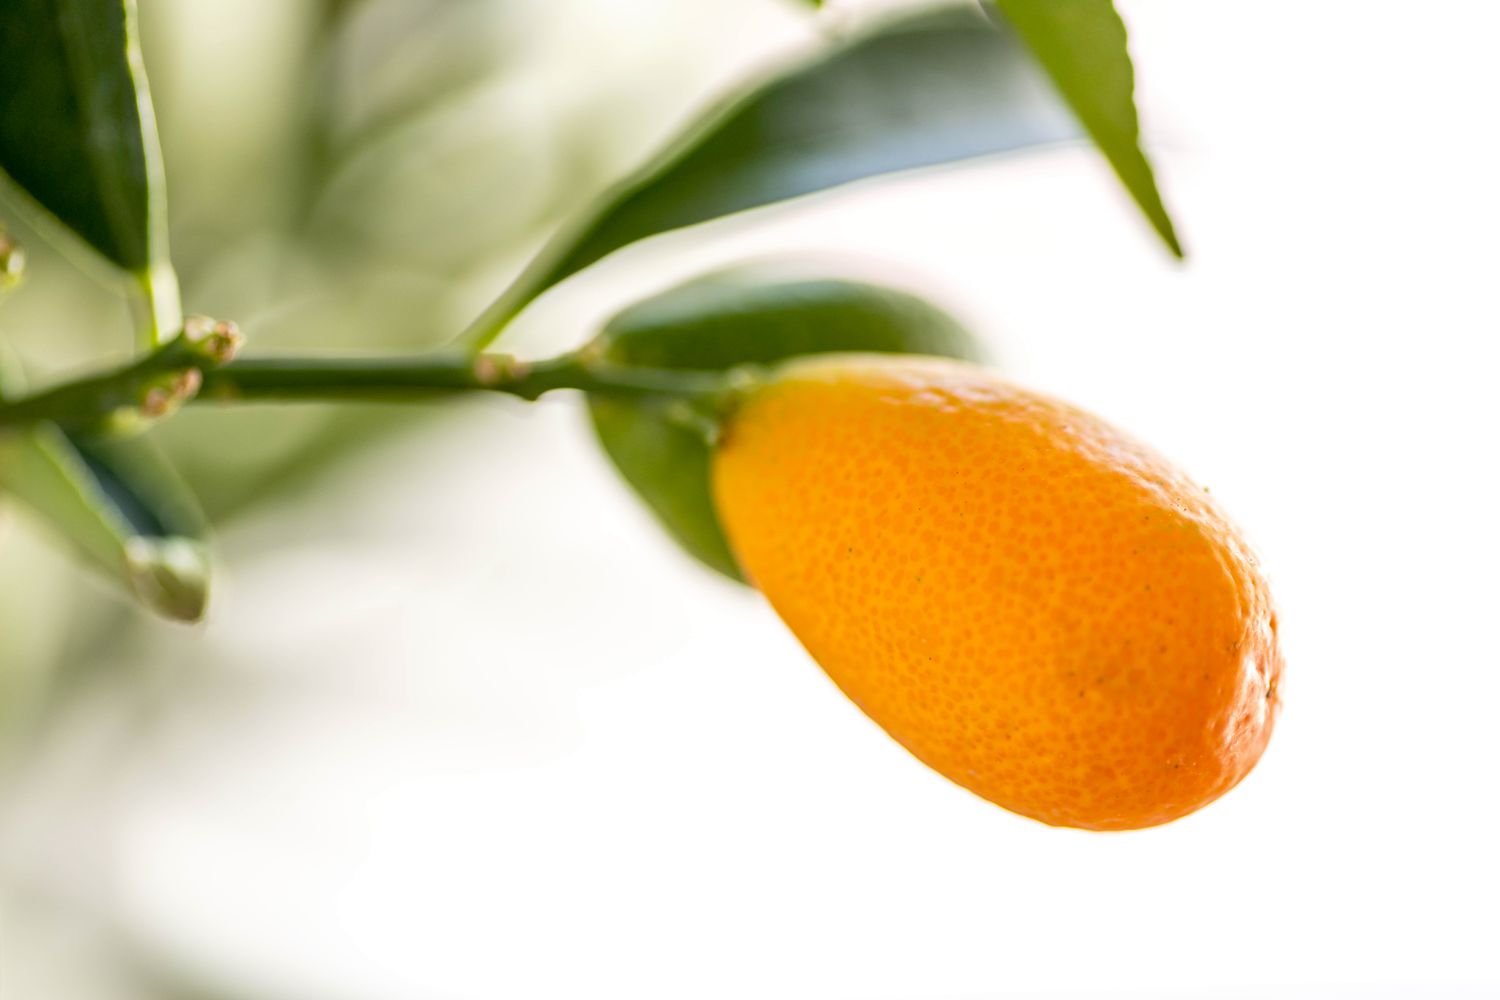 Kumquatbaumzweig mit leuchtend orangefarbener, länglicher Frucht in Nahaufnahme